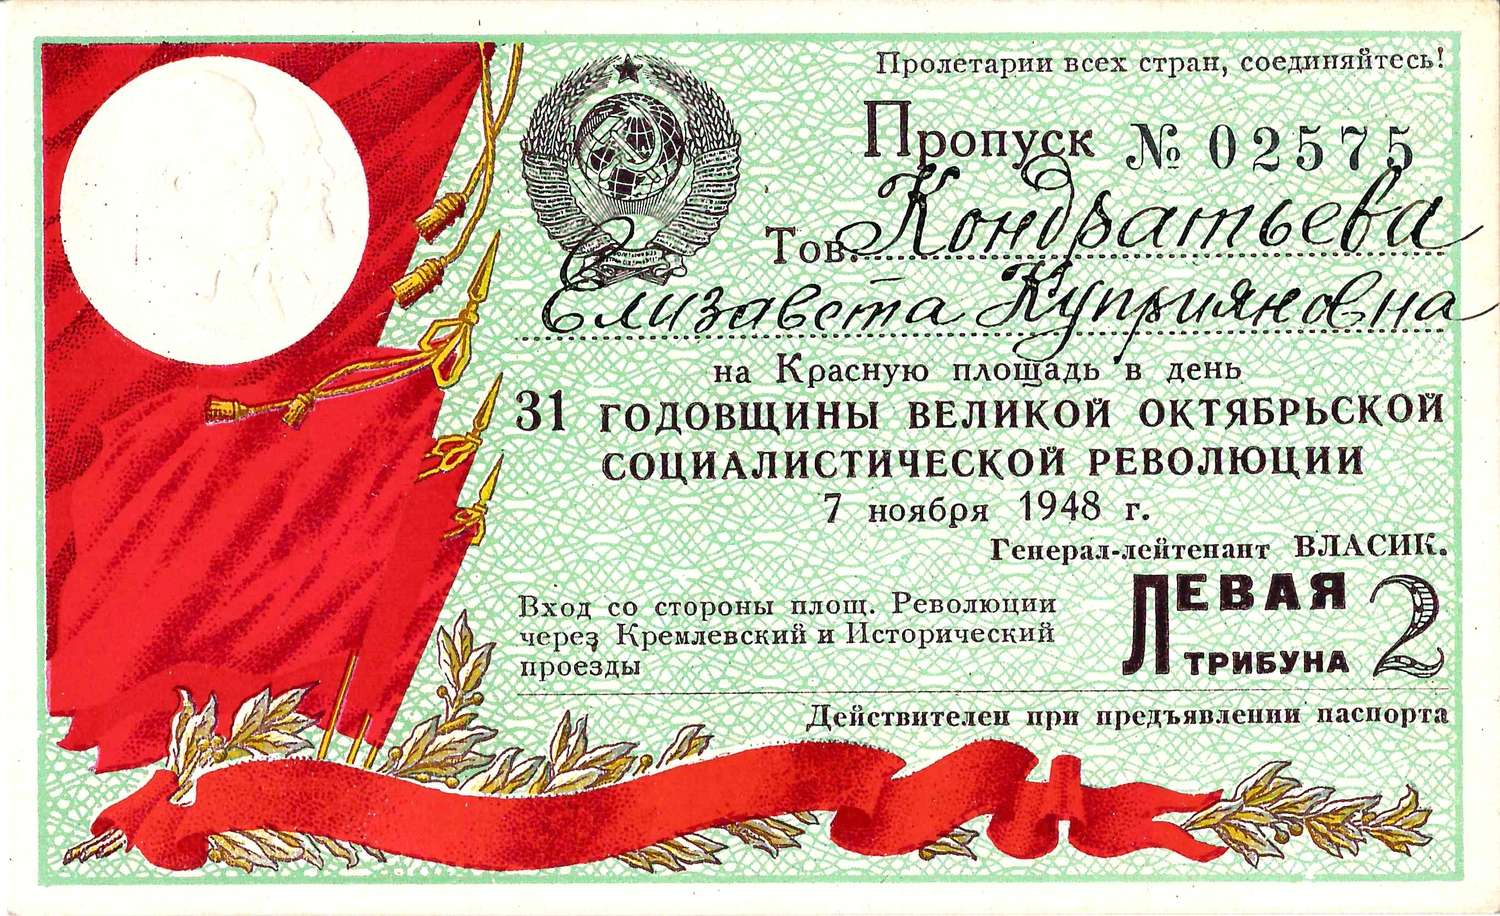 Пропуск на Красную площадь в день годовщины Великой Октябрьской социалистической революции 7 ноября 1948 года на имя Елизаветы Куприяновны Кондратьевой.